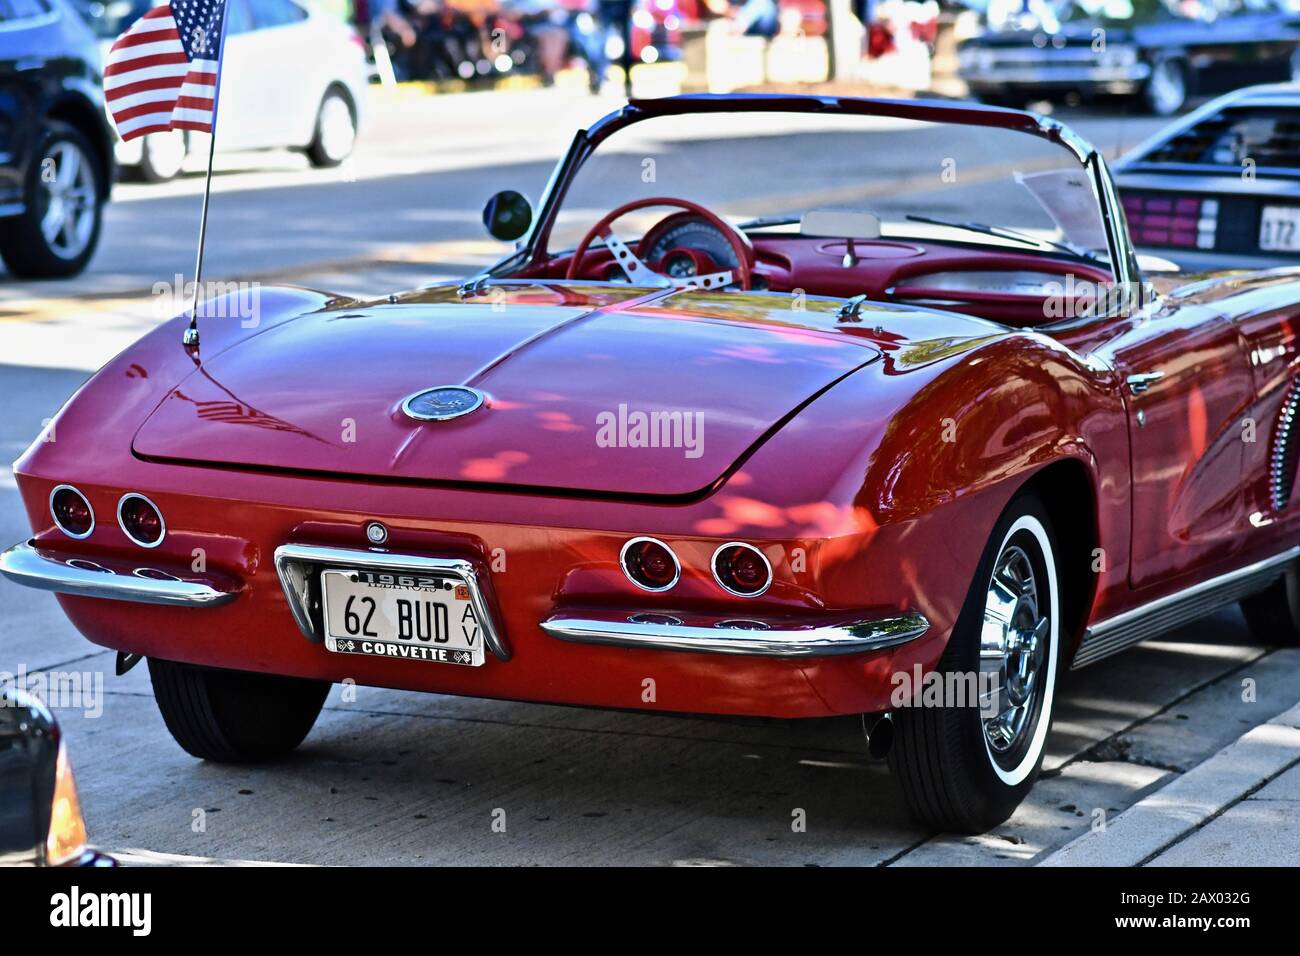 Downers GROVE, STATI UNITI - Giu 07, 2019: Una vecchia vettura Corvette rossa nel parcheggio di Downers Grove, Stati Uniti Foto Stock